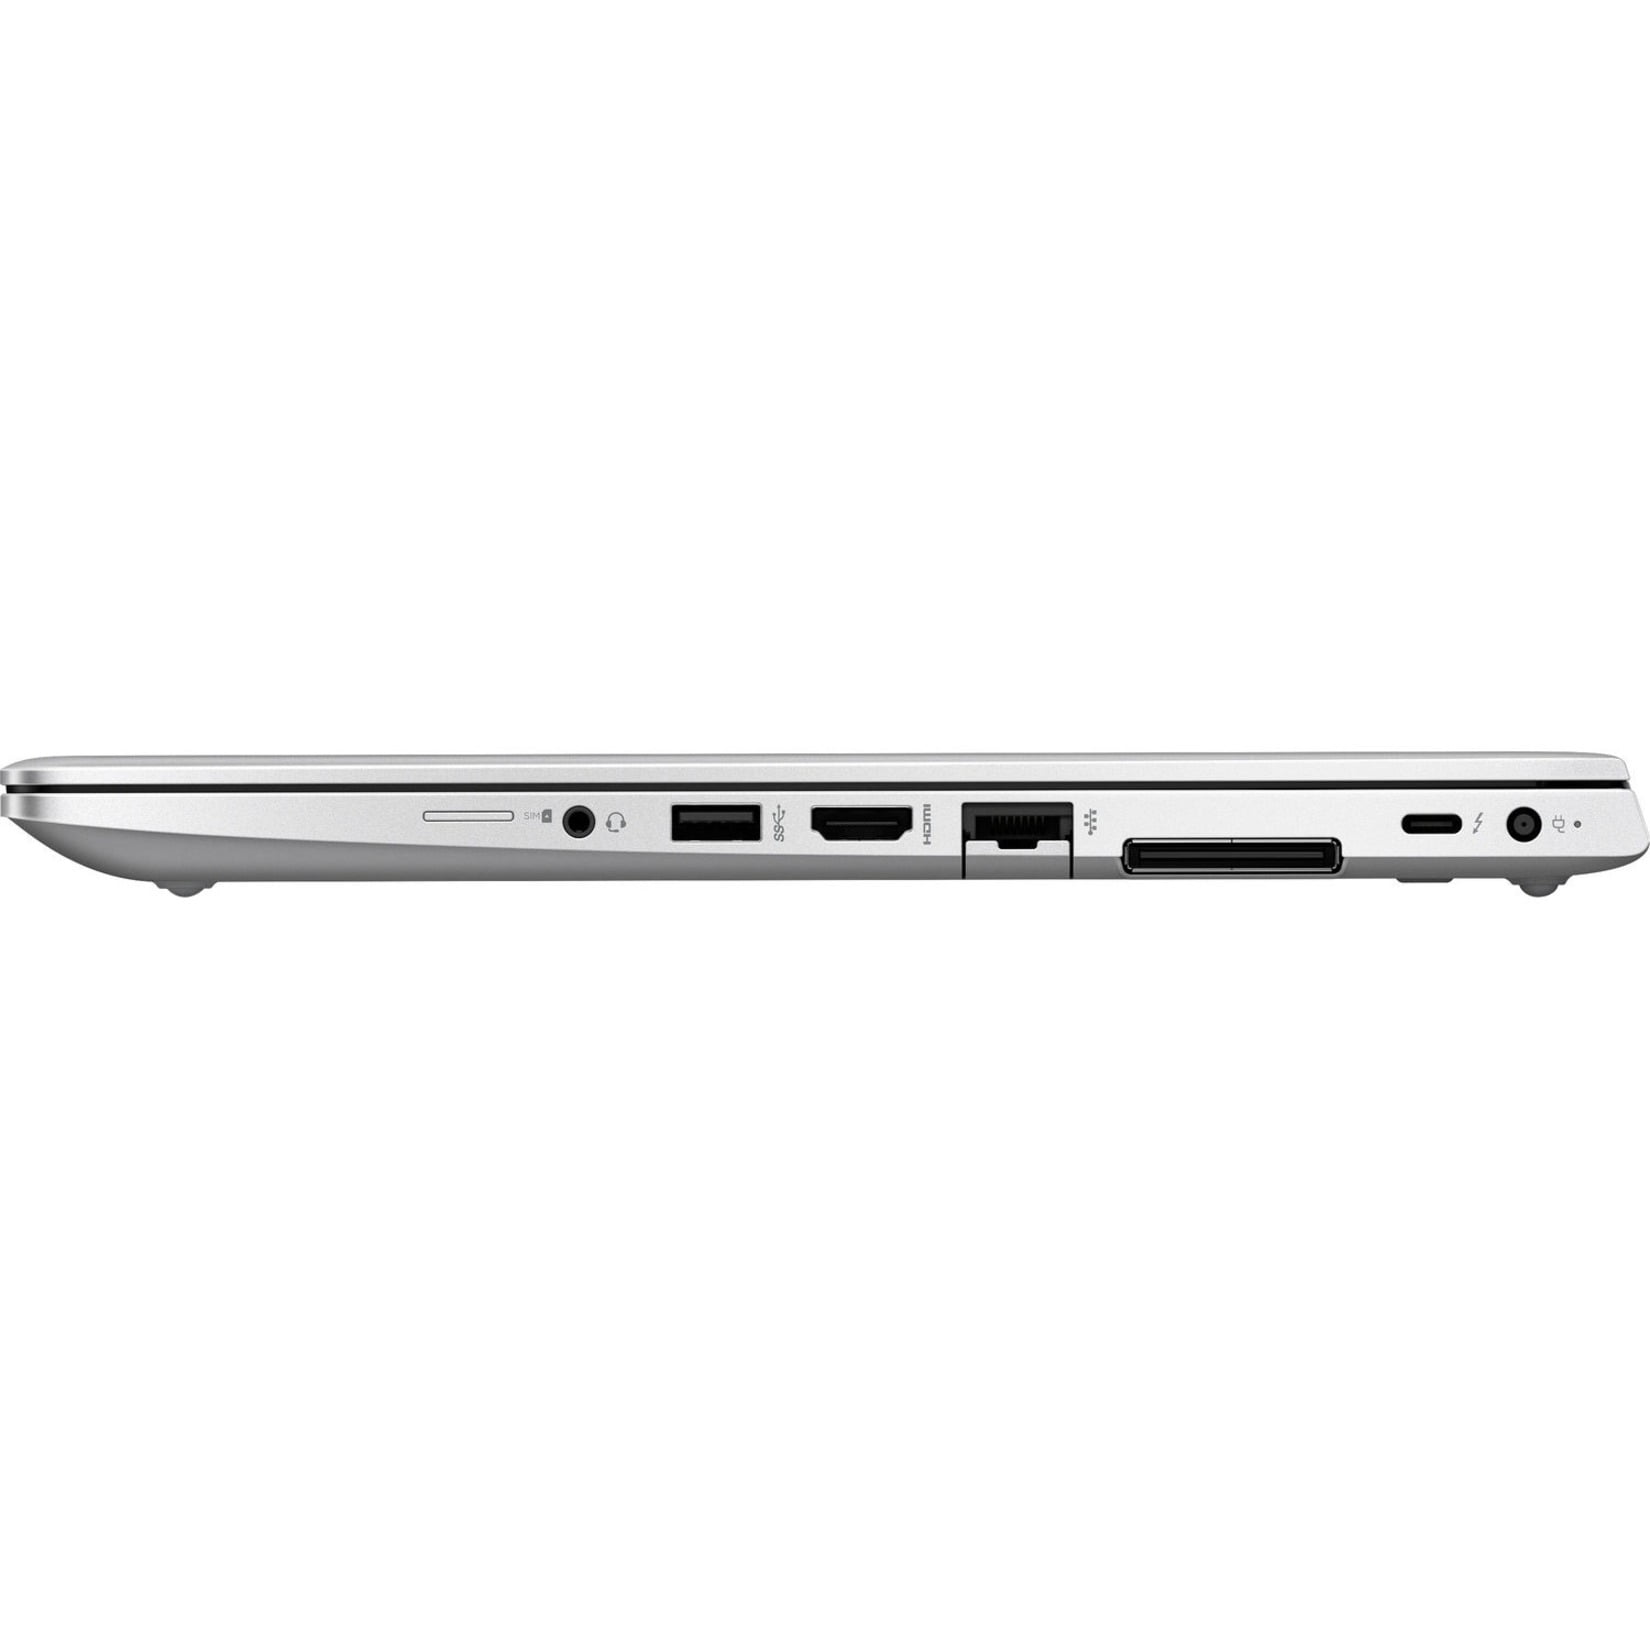 EliteBook 14" Full HD Laptop, Intel Core i7 i7-8650U, 512GB SSD, Windows 10 - Walmart.com